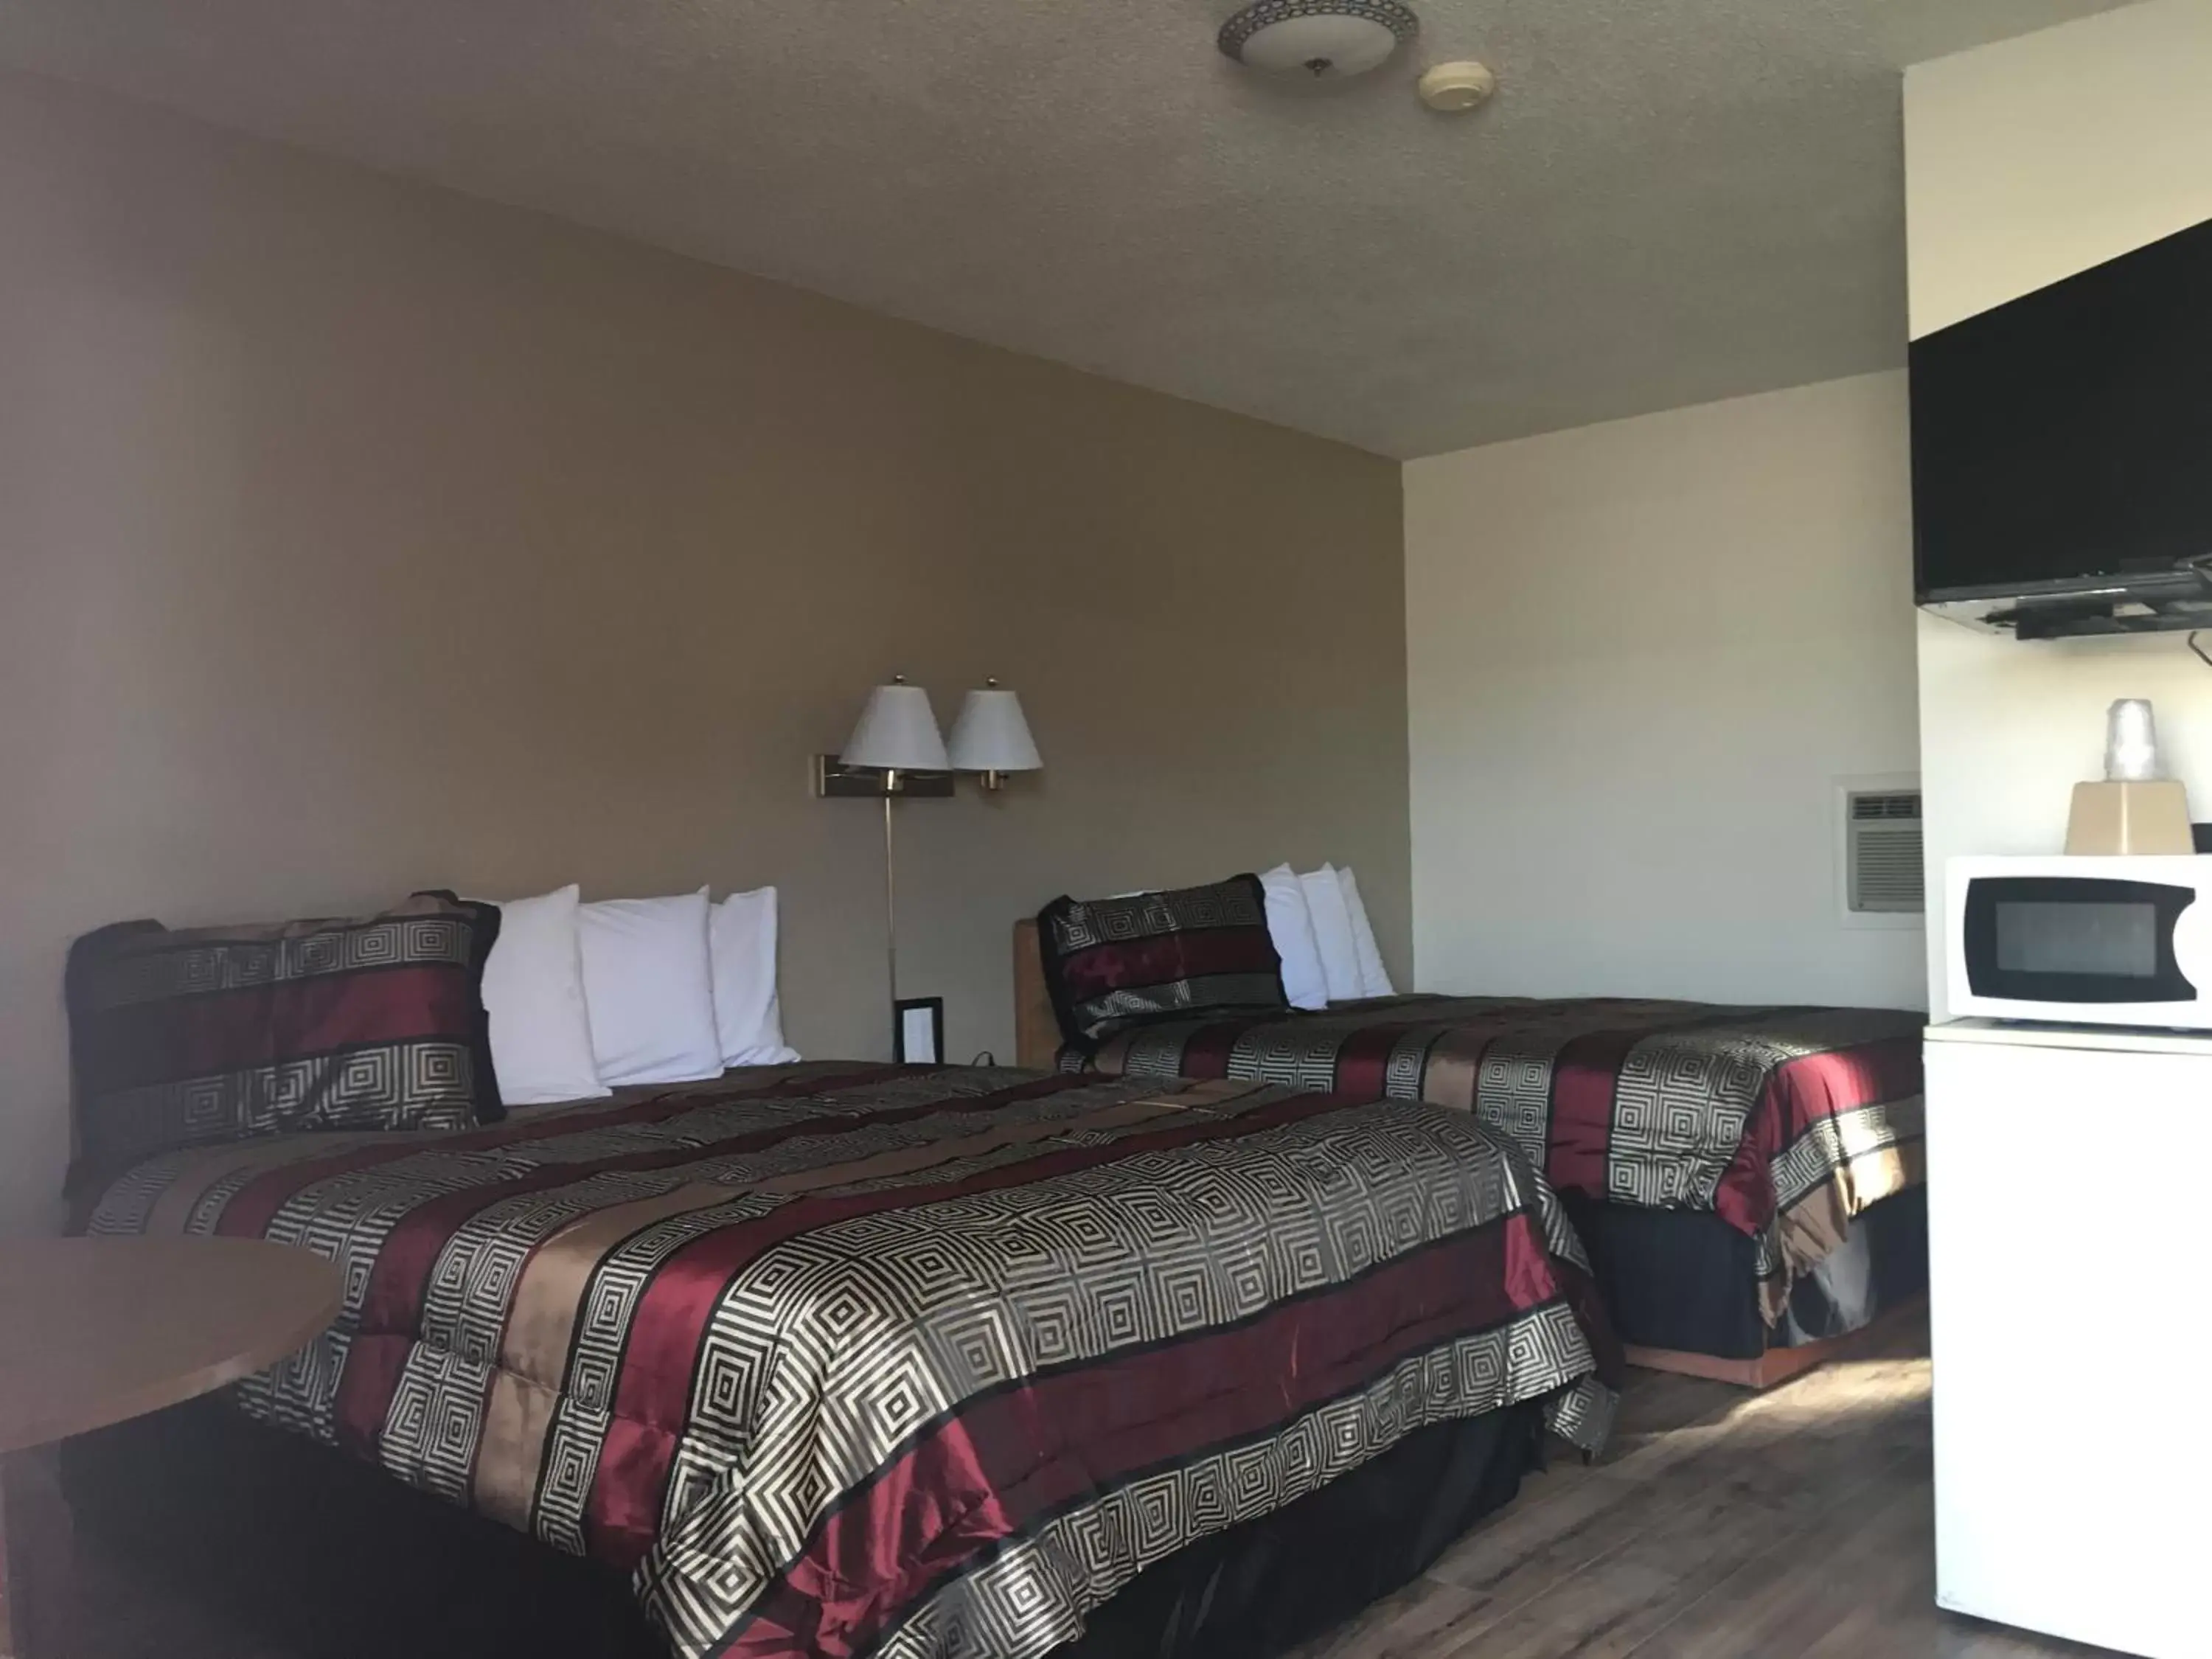 Bed in Travel Inn Motel